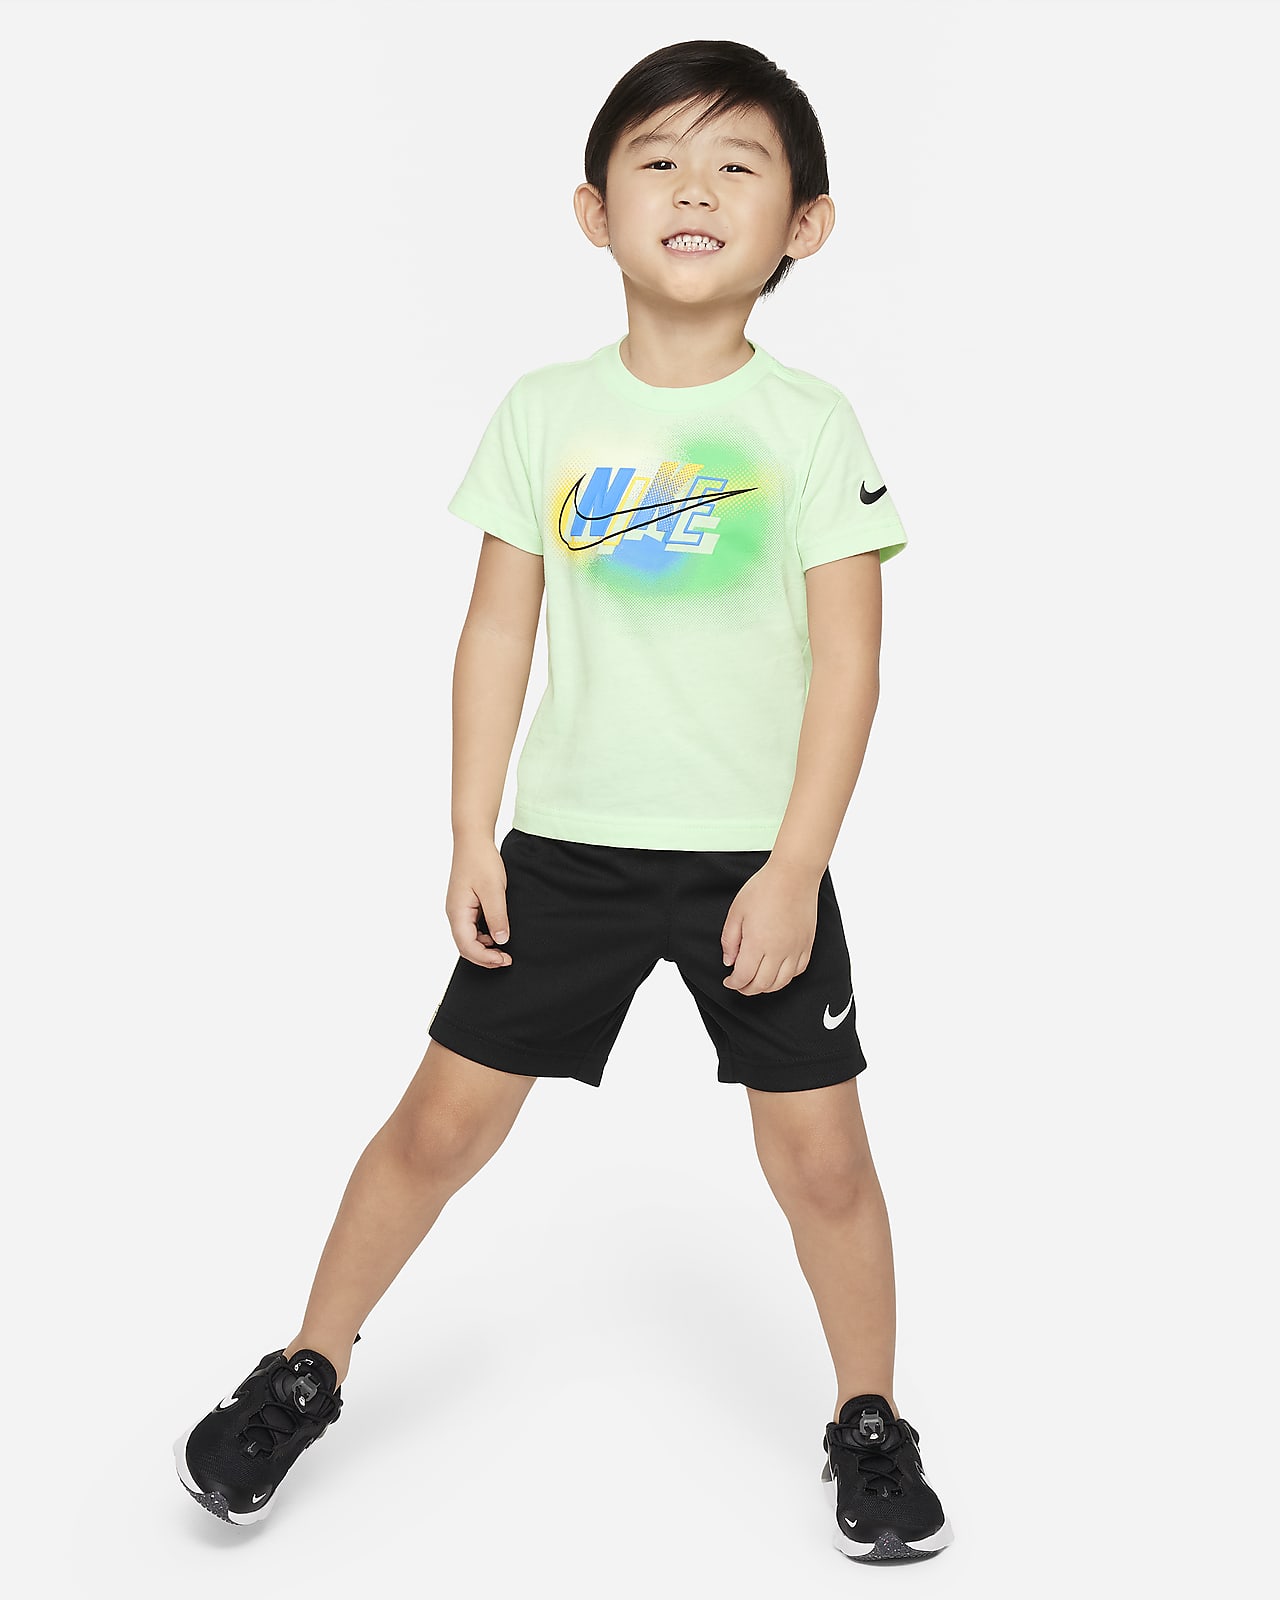 Completo con shorts Nike Hazy Rays – Bimbo/a